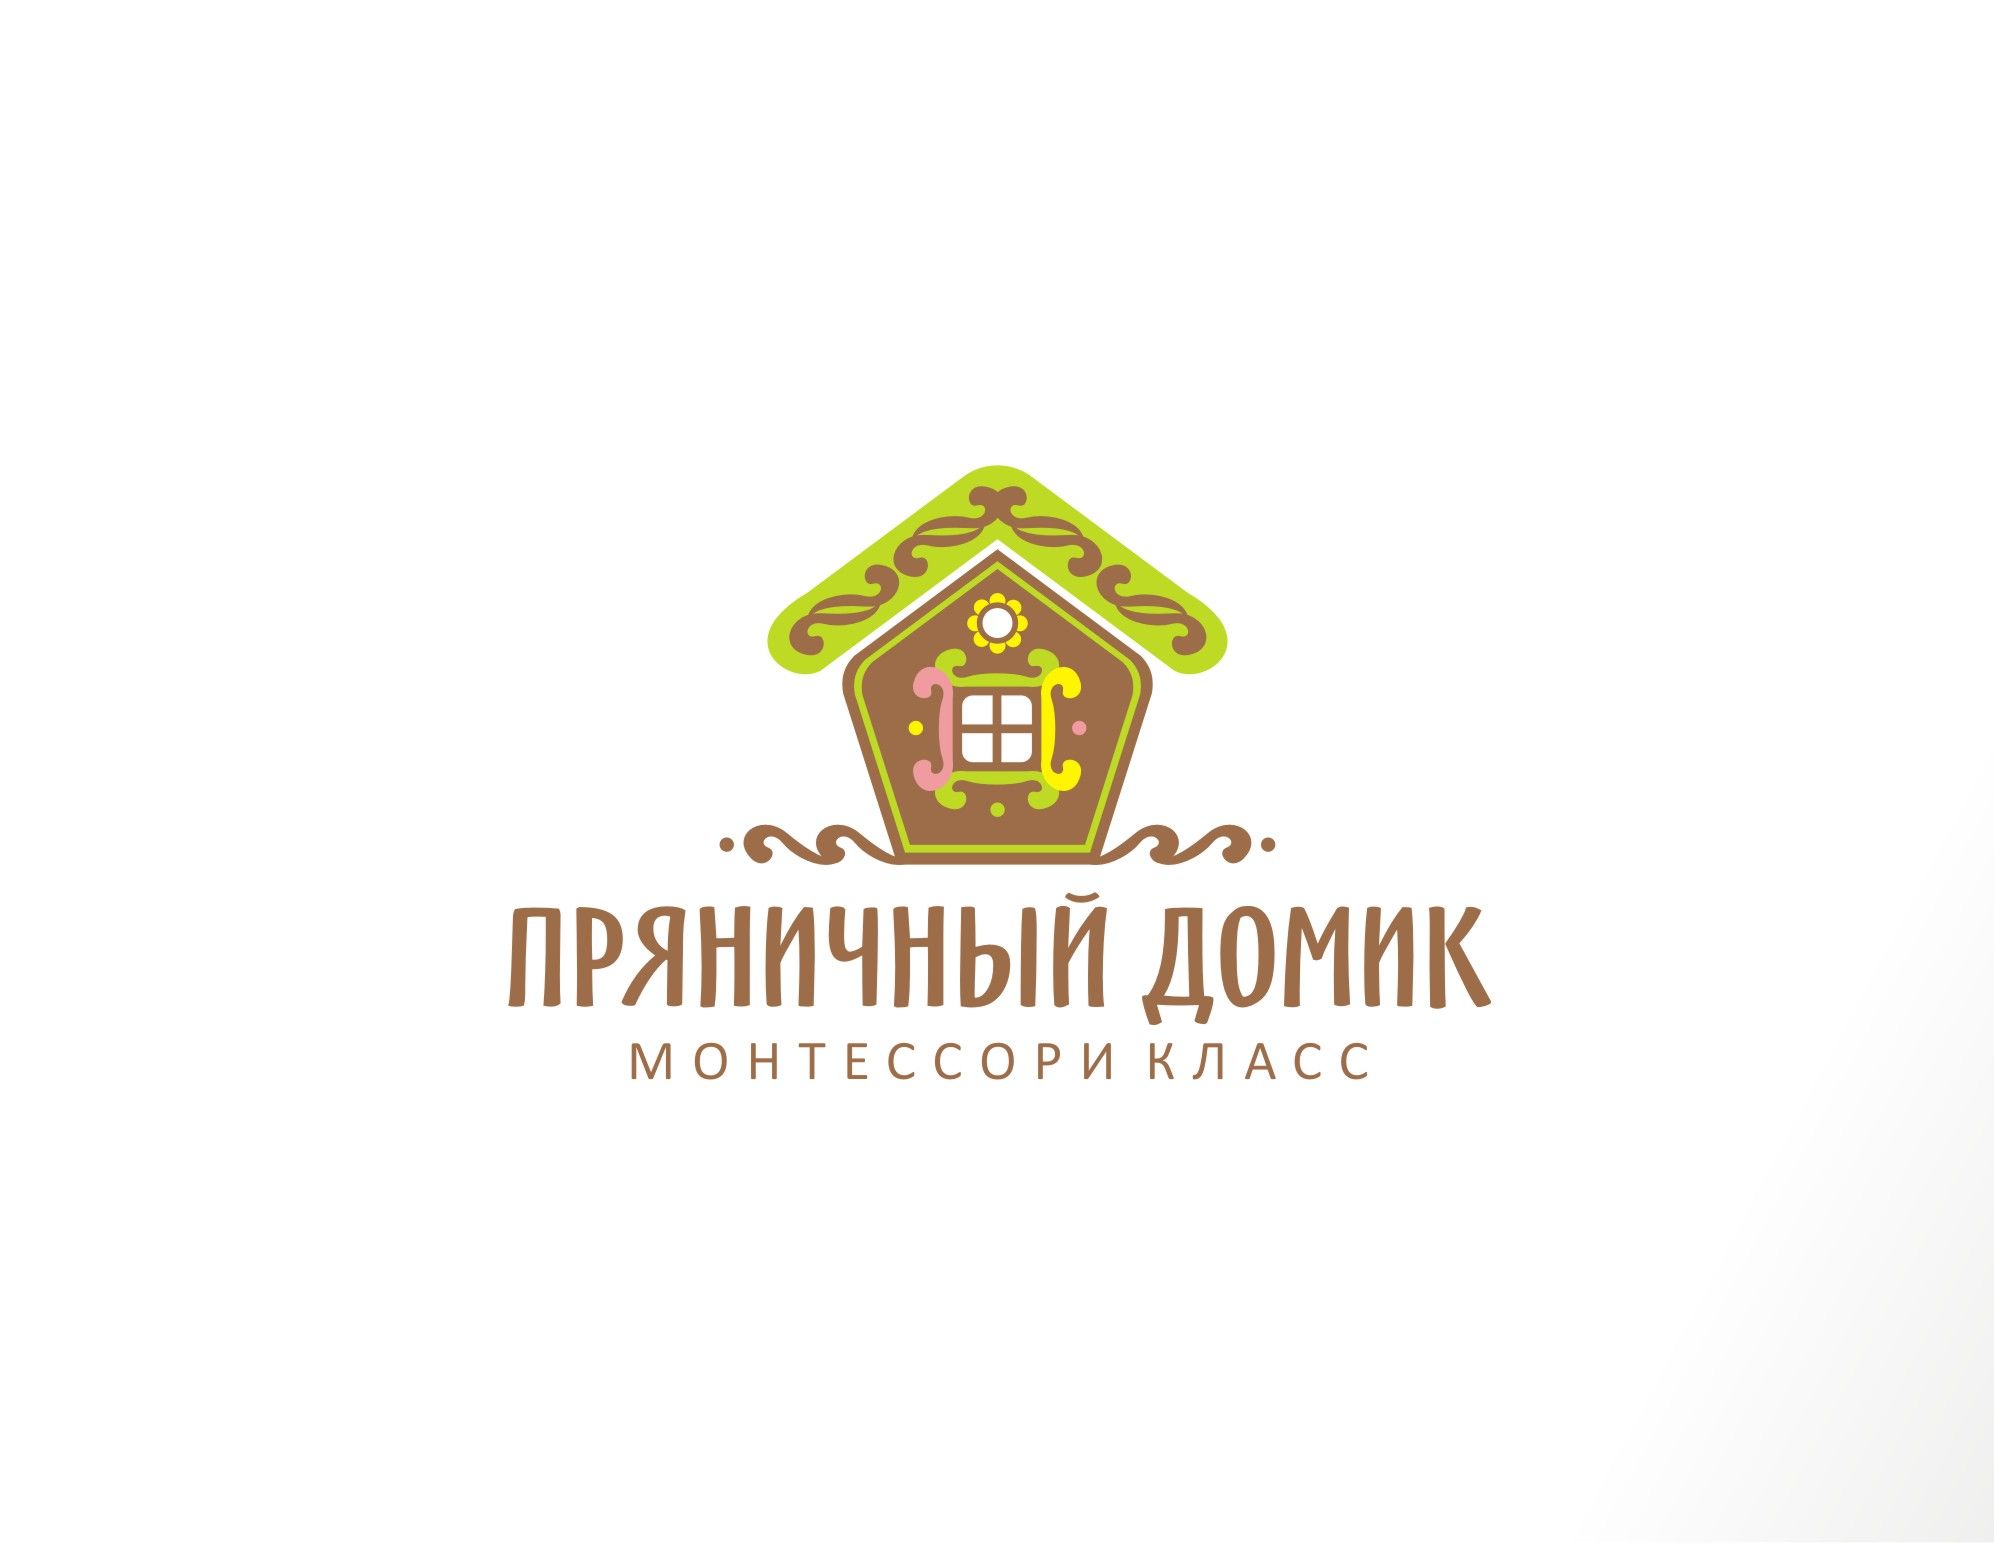 Логотип для ПРЯНИЧНЫЙ ДОМИК монтессори класс - дизайнер ideograph